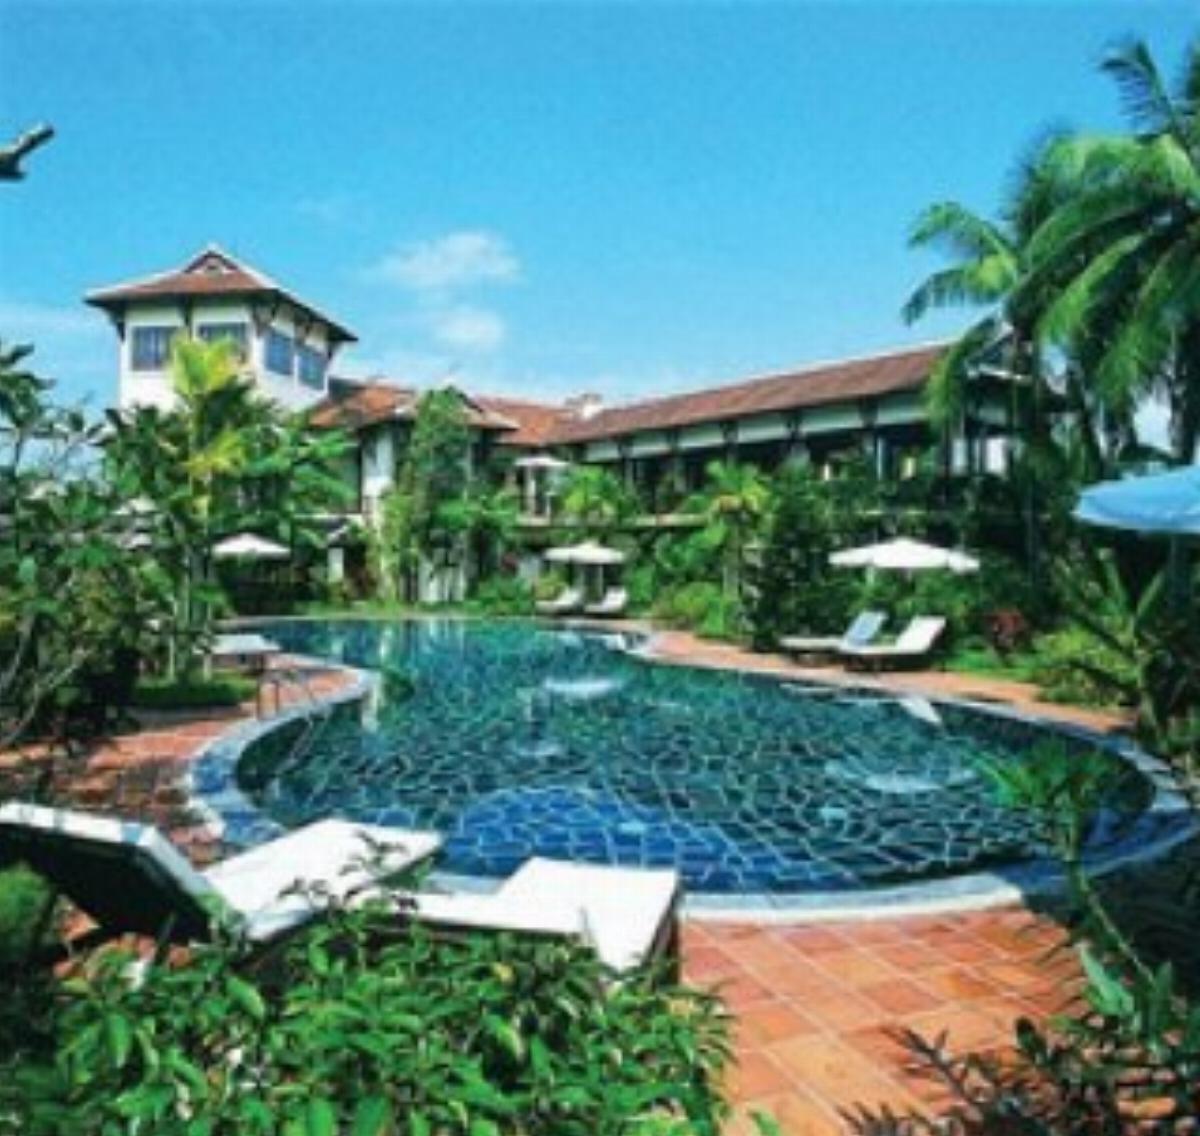 Hoi An Riverside Resort Hotel Hoi An - Danang - Central Vietnam